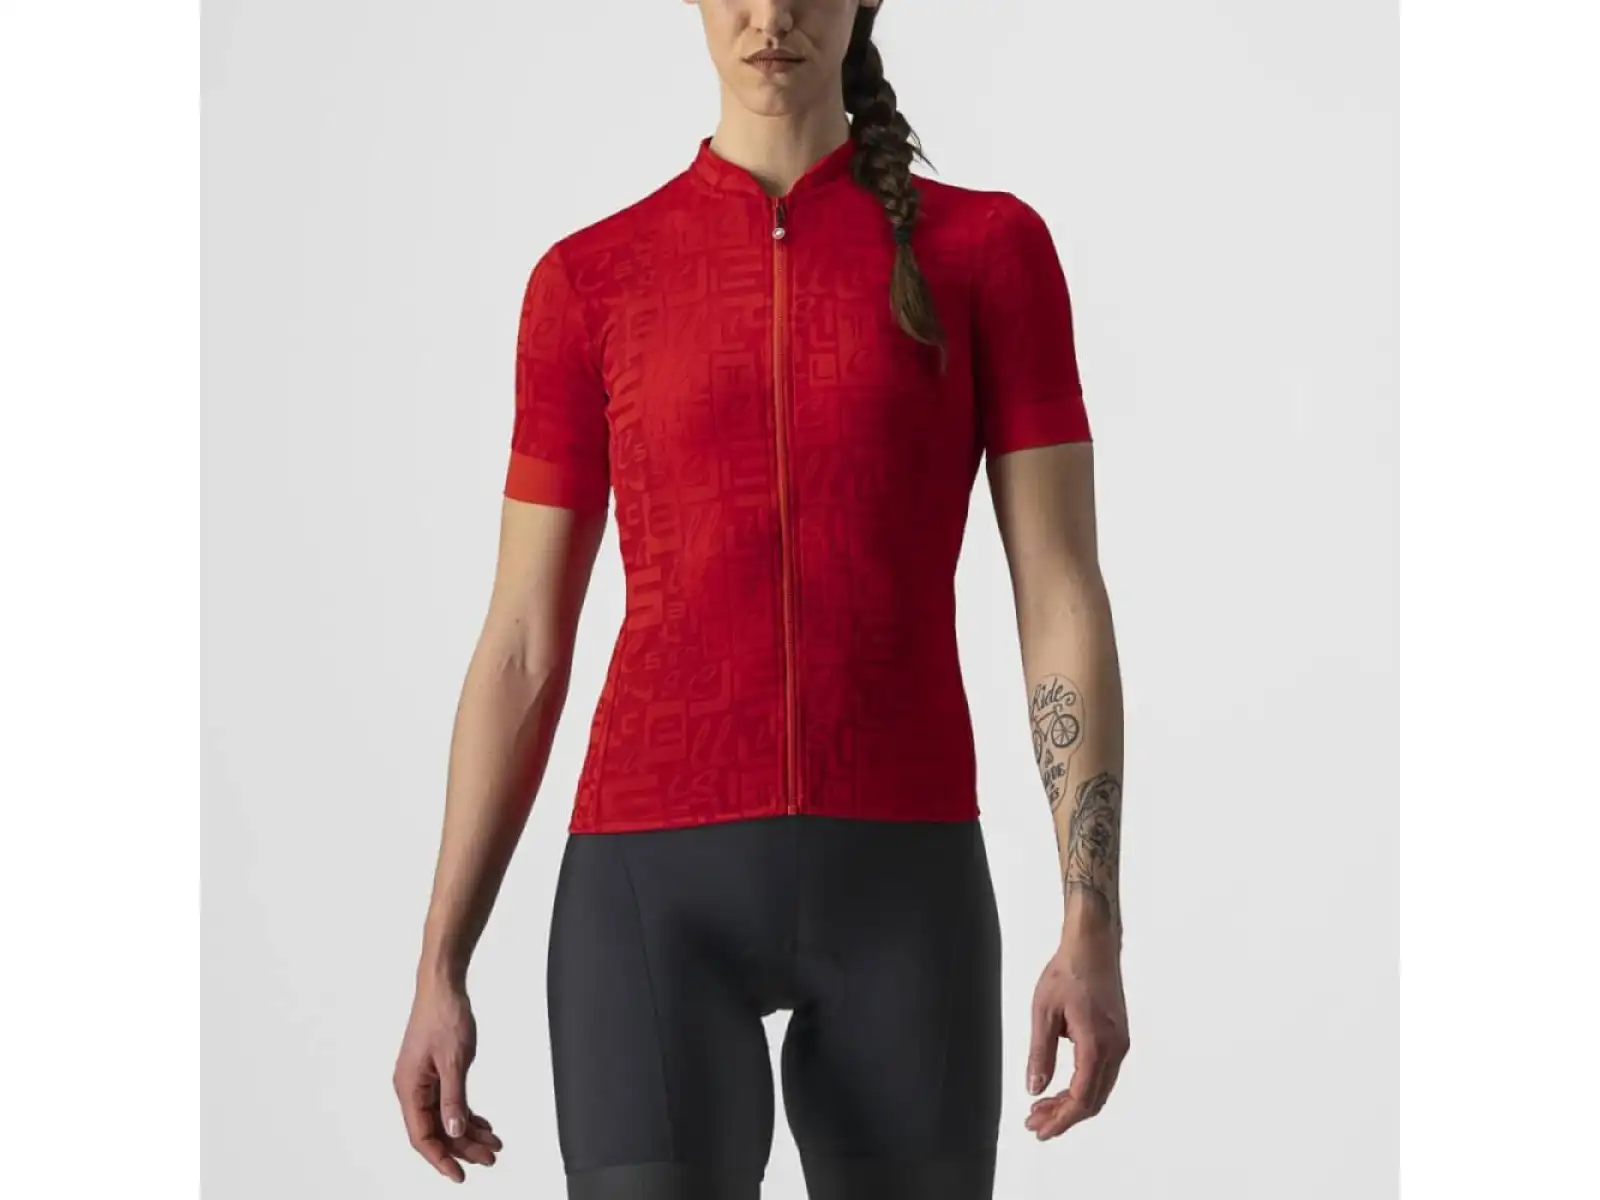 Castelli Promessa Jacquard Dámsky cyklistický dres s krátkym rukávom Red